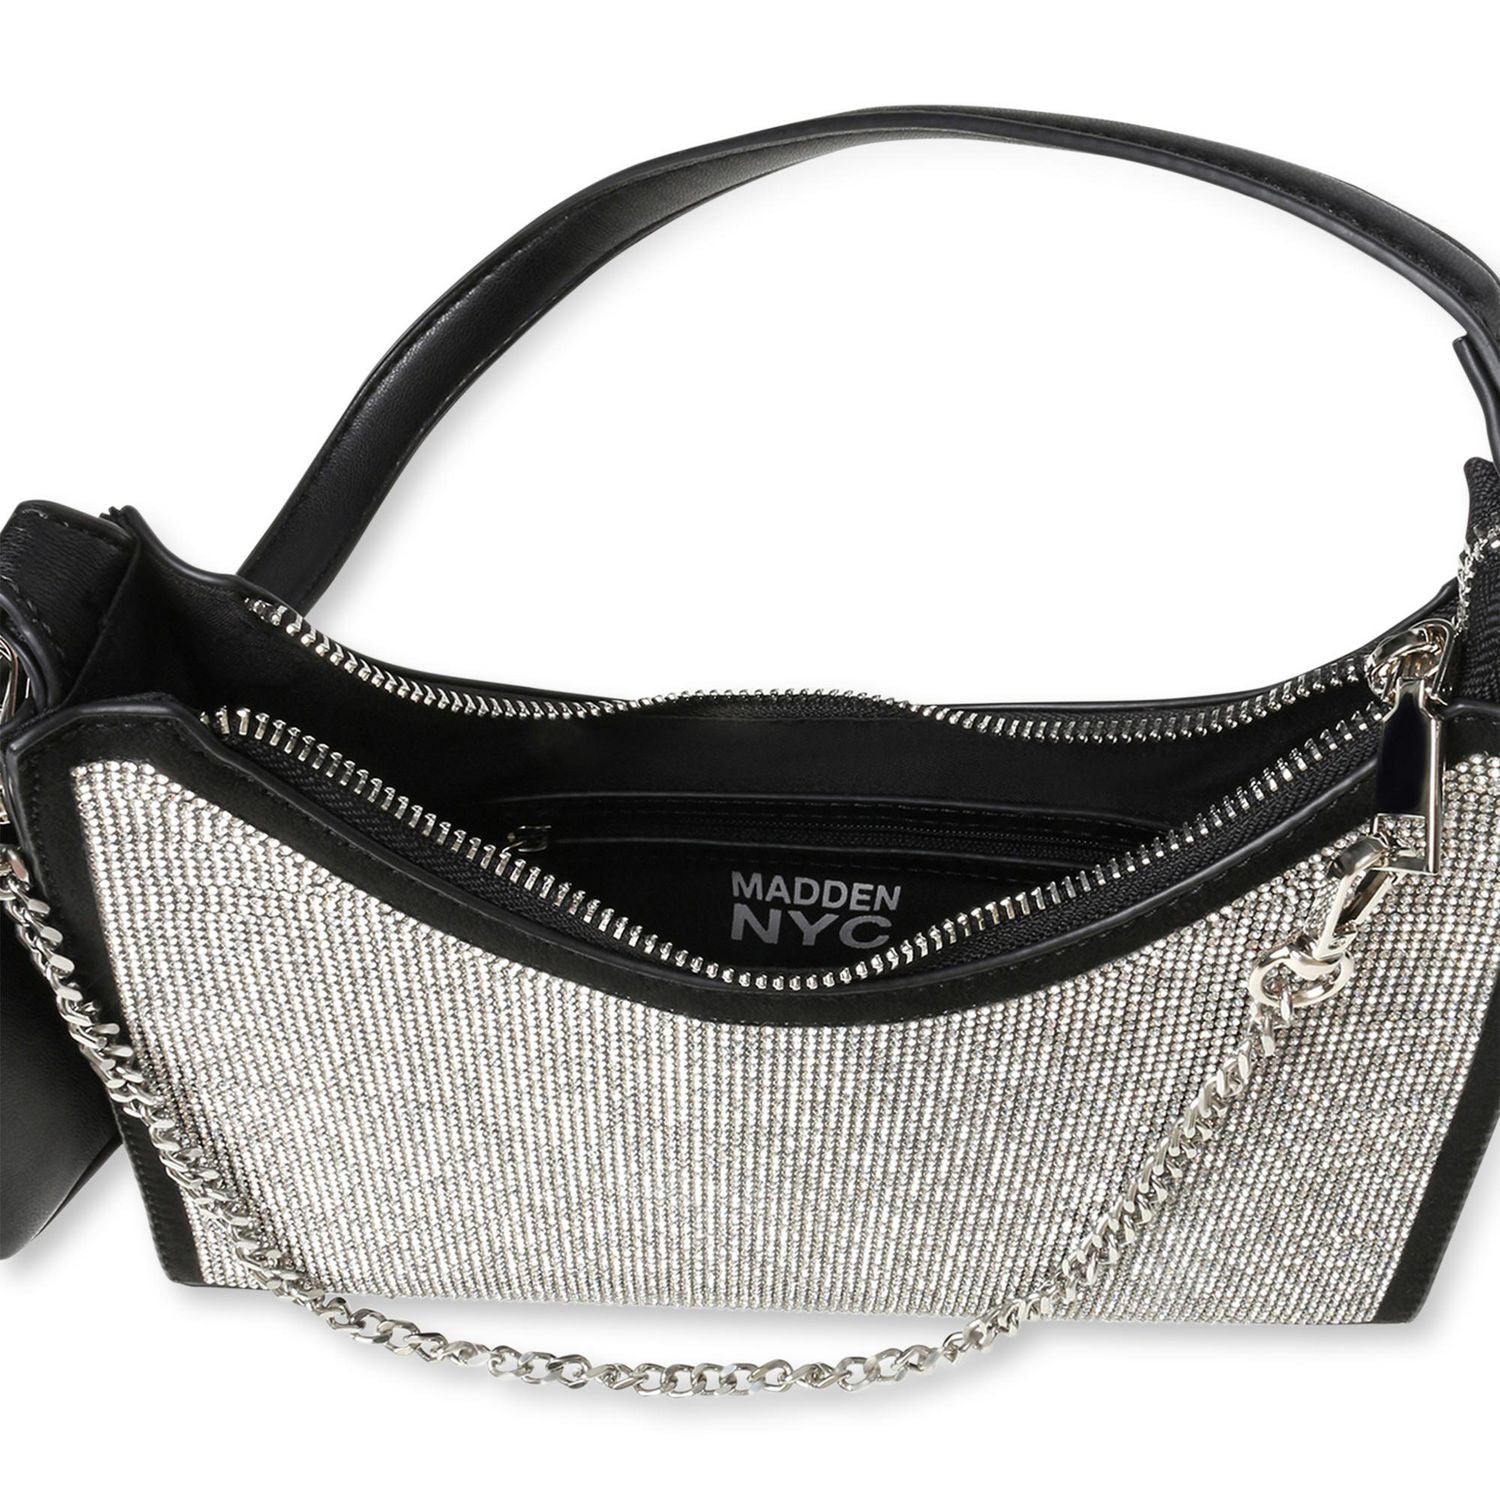 Women's Madden Girl Handbags Under $100 | Nordstrom Rack